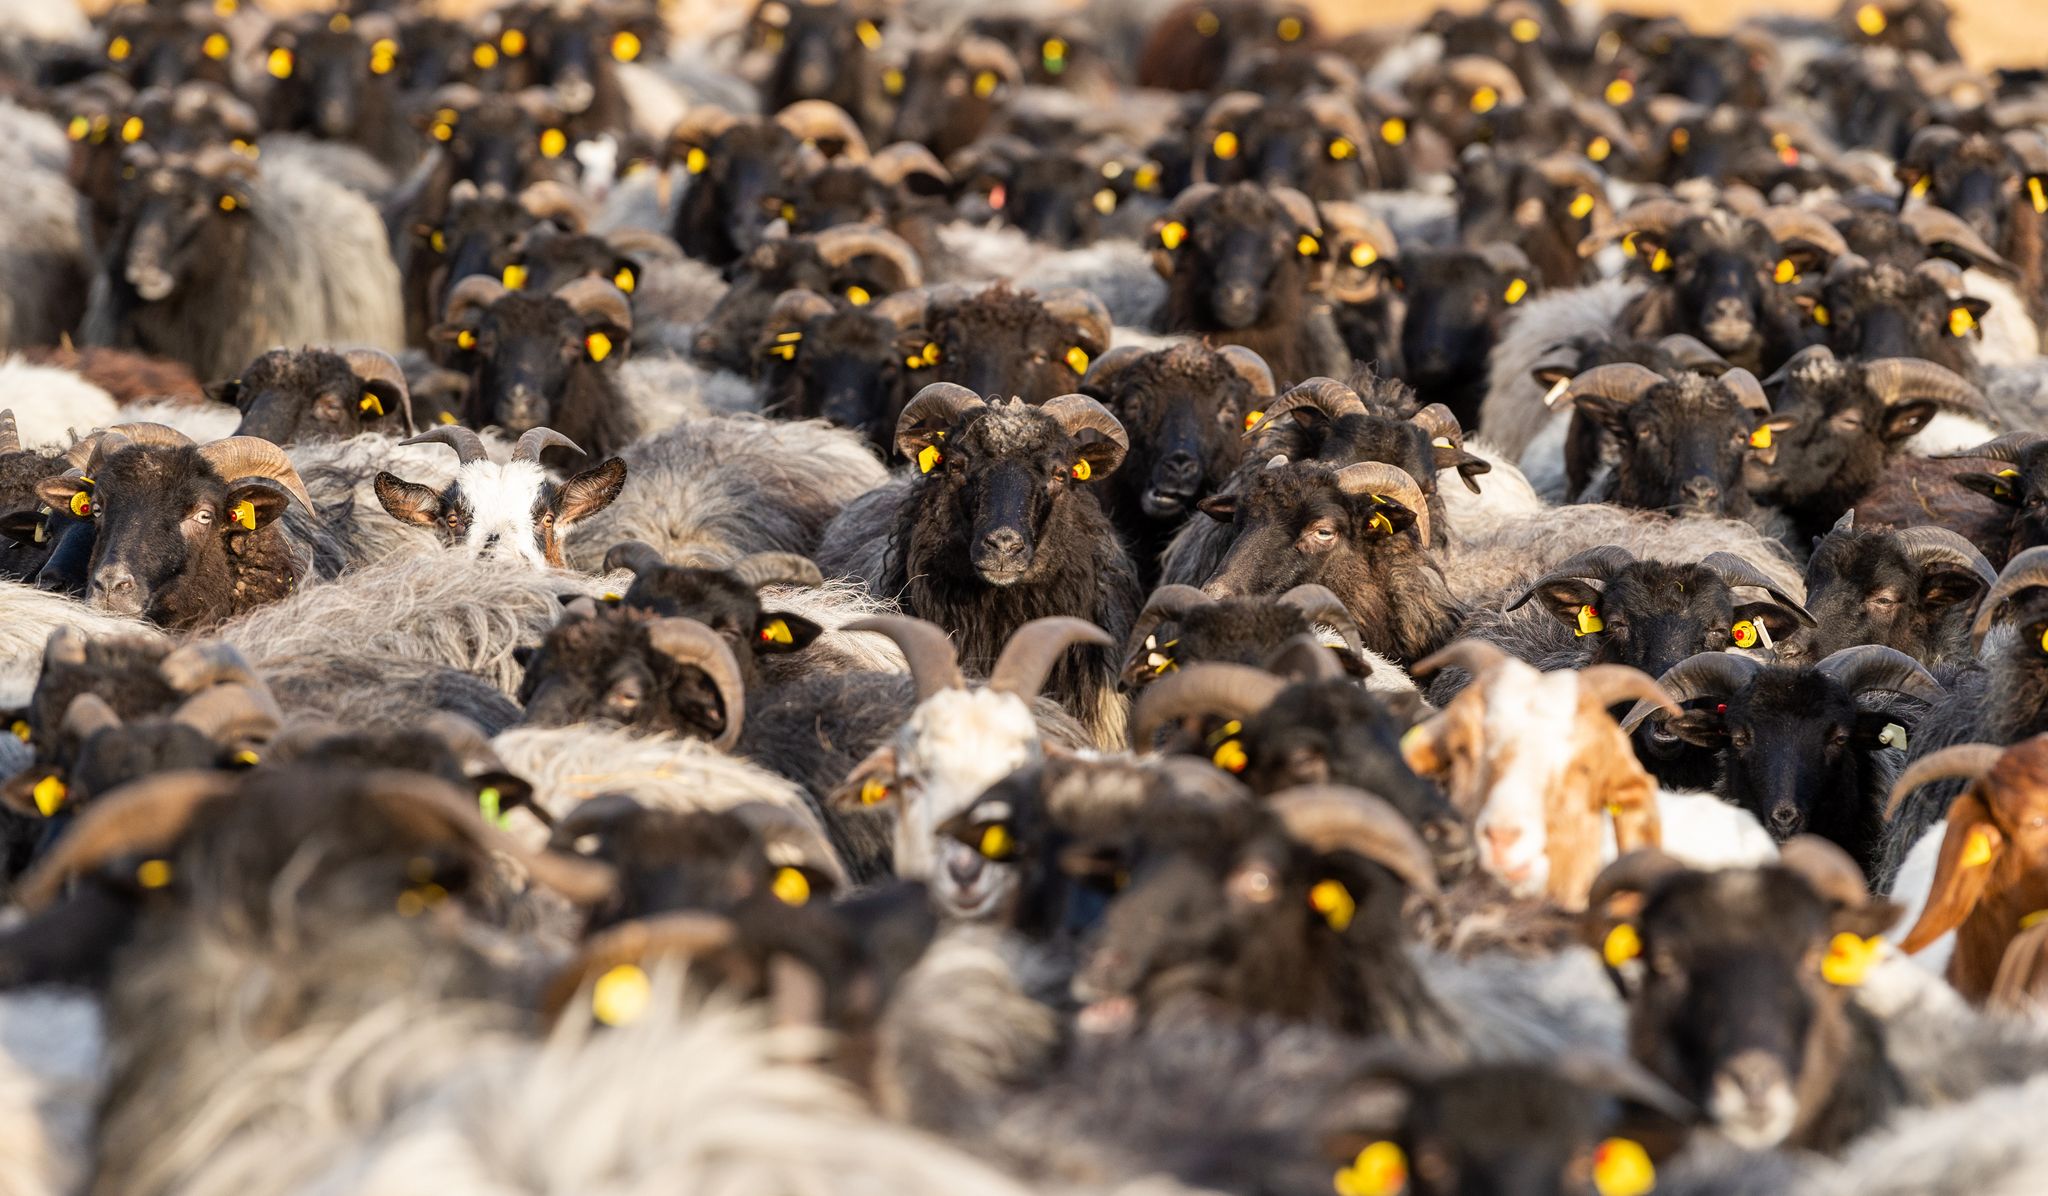 ARCHIVE - La contribution de l'élevage au PIB agricole régional est de 44 pour cent avec une moyenne de plus de 60 millions de têtes de bétail, 400 millions de volailles et 160 millions de petits ruminants. Foto: Philipp Schulze/dpa